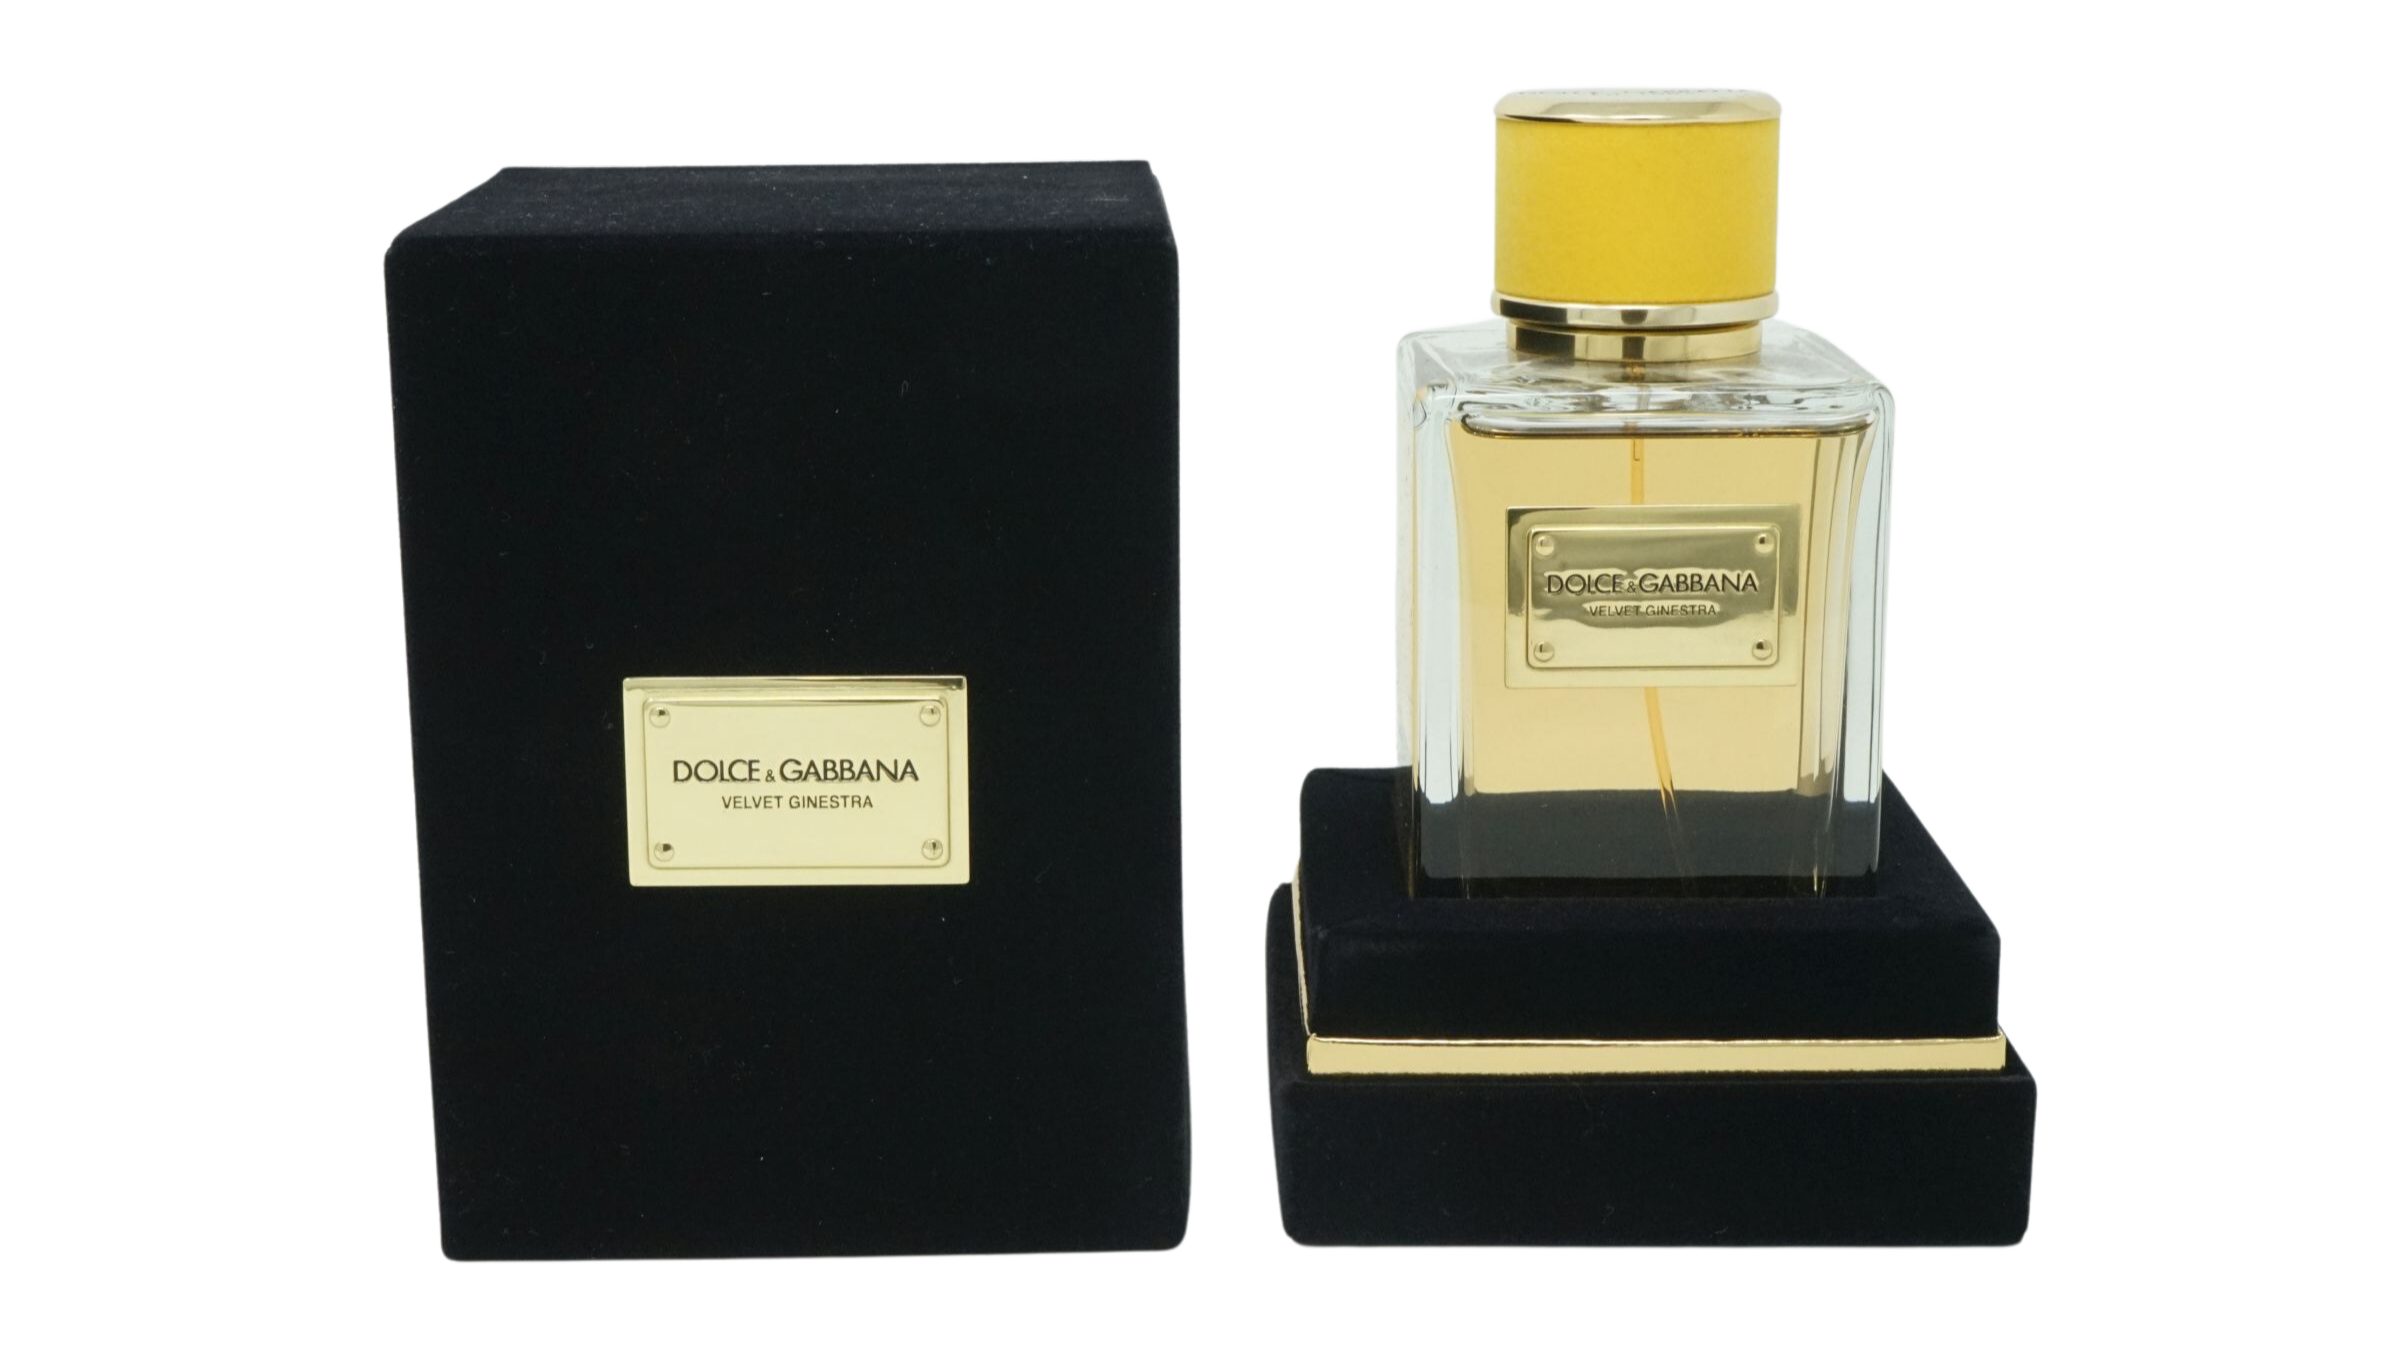 DOLCE & GABBANA Eau de Parfum Dolce & Gabbana Velvet Ginestra Eau de parfum Spray 150ml